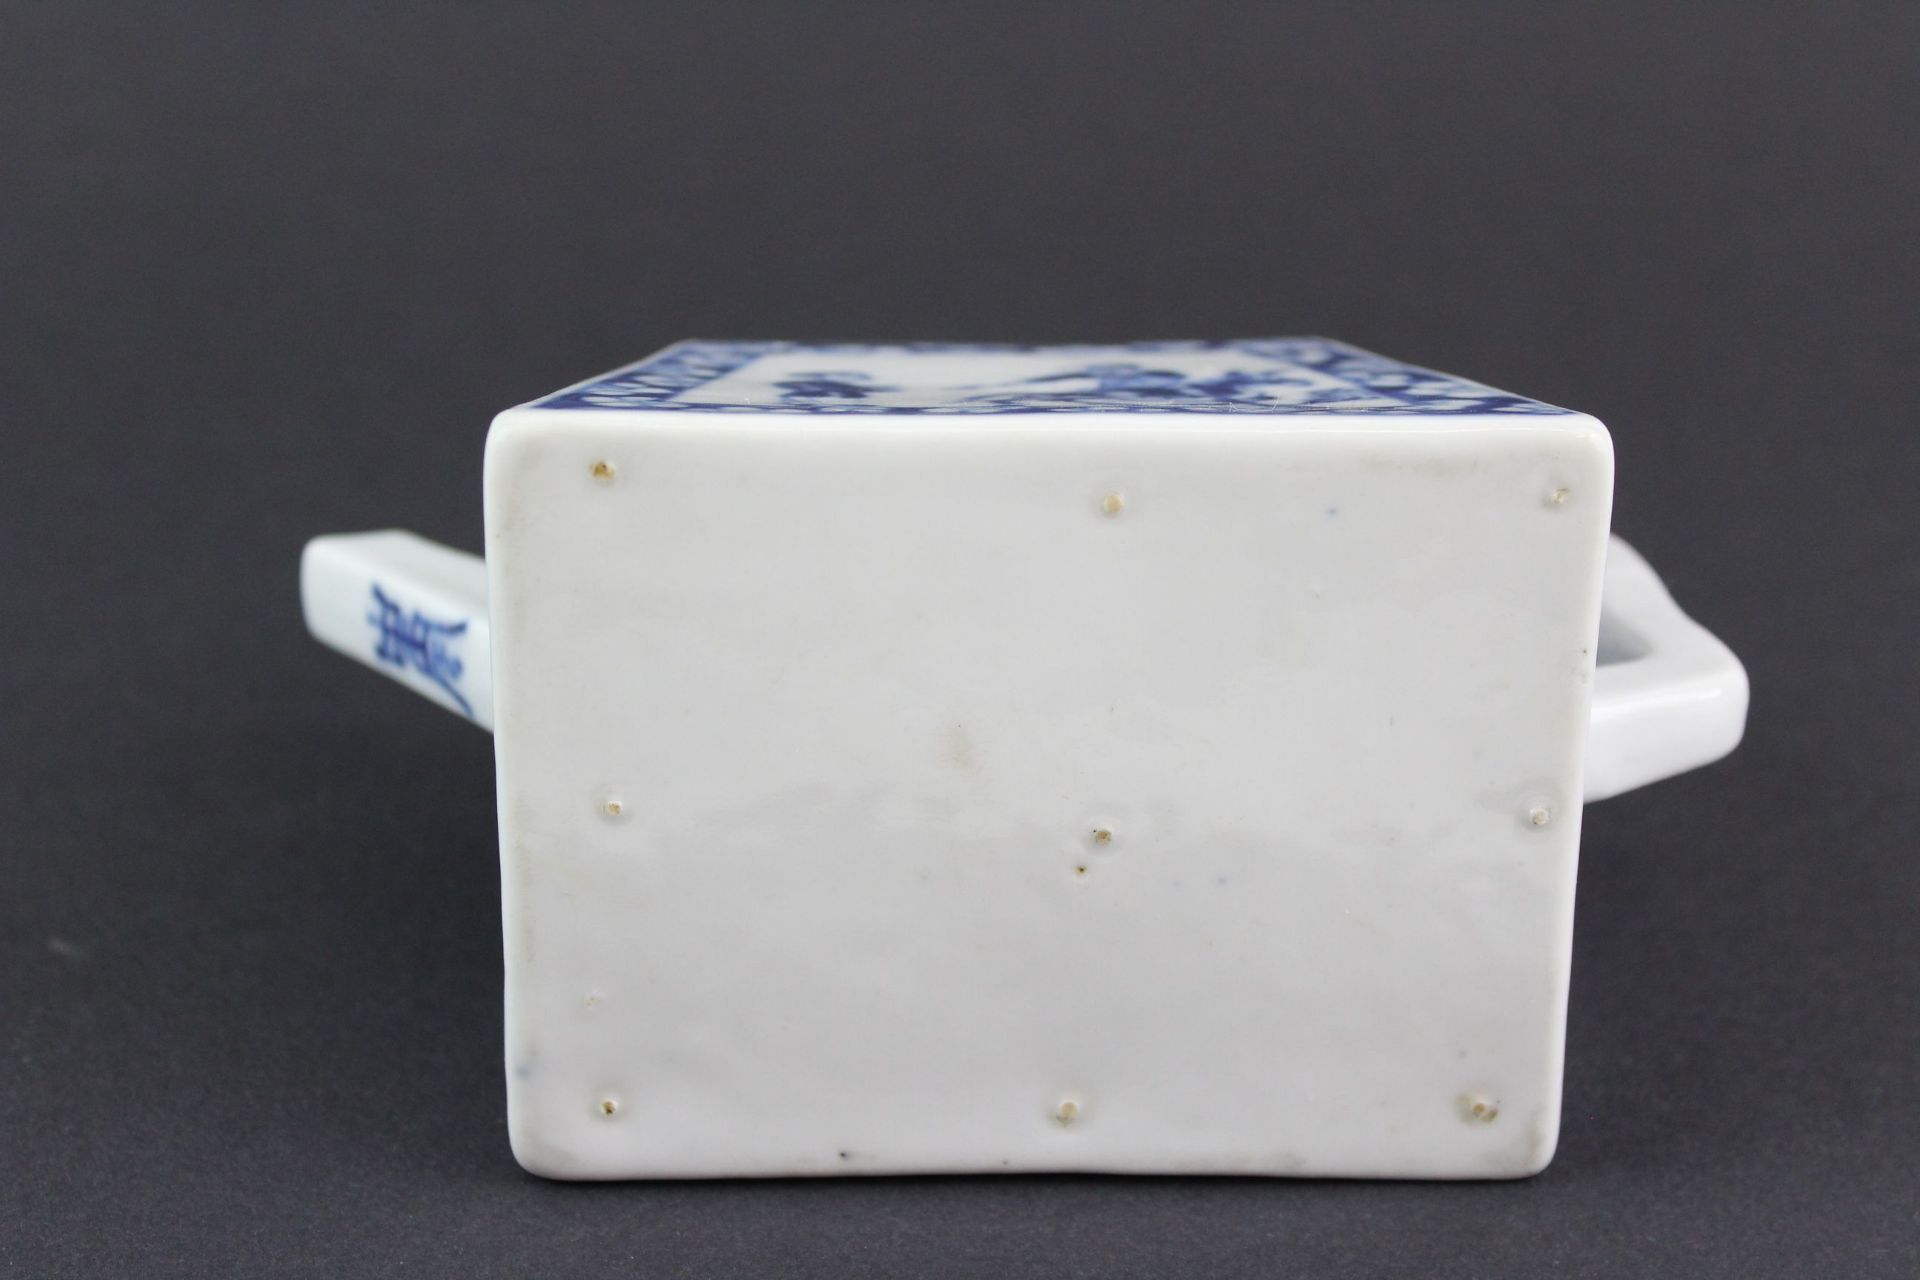 China späte Qing Dynastie Porzellan Teekanne mit BW Malerei - Bild 3 aus 6